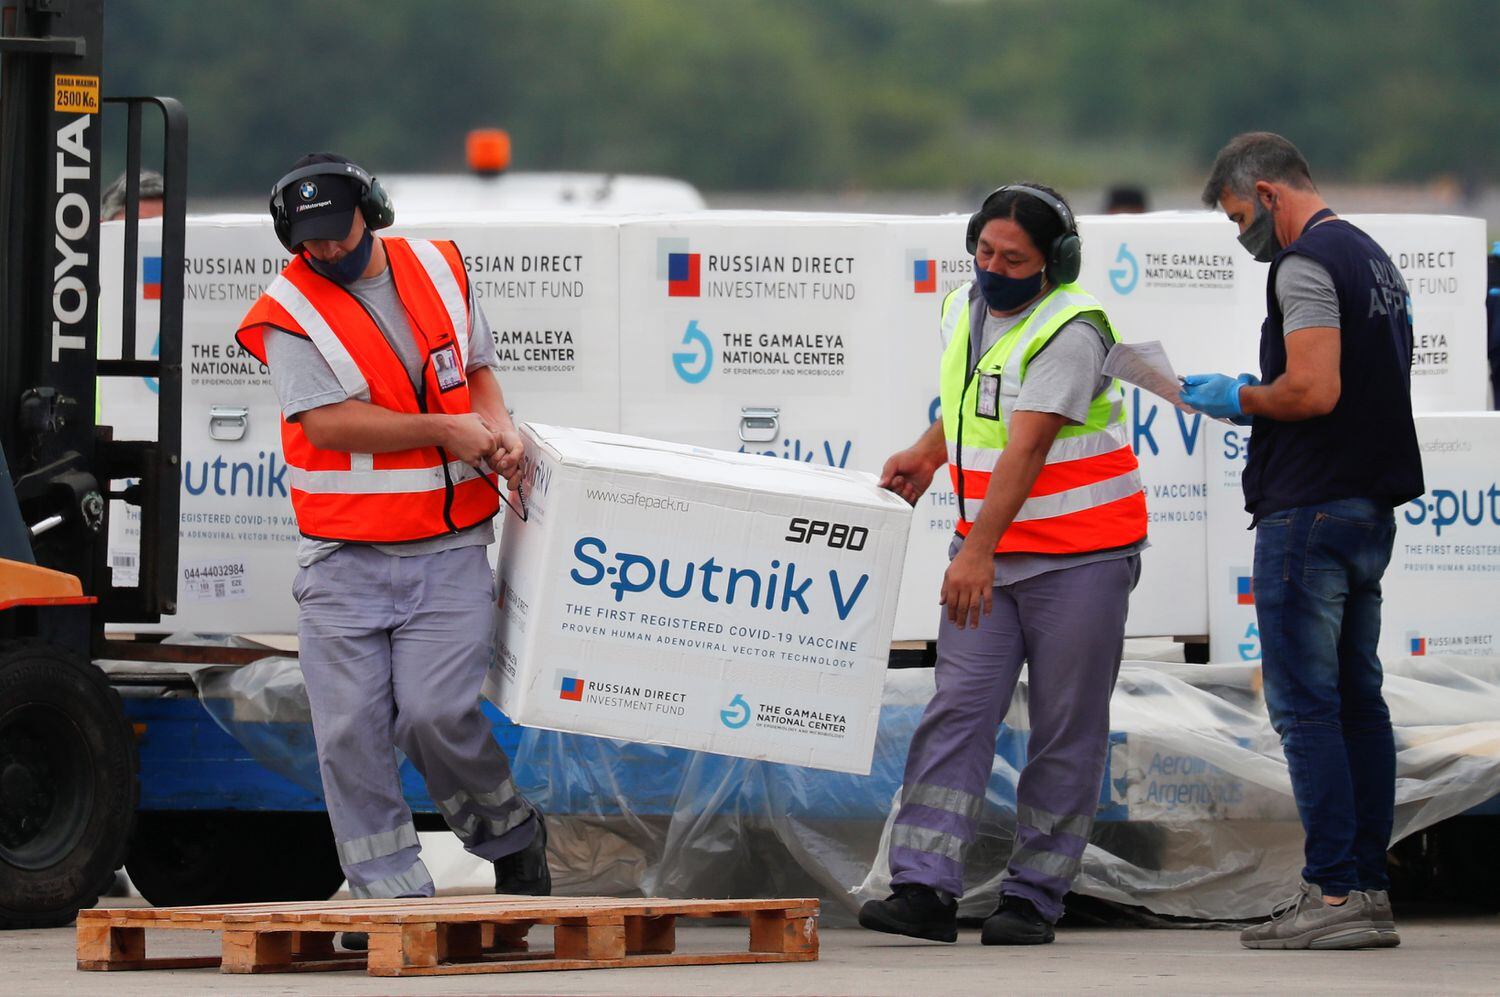 Descarregamento de caixas com vacinas Sputnik V no Aeroporto Internacional de Ezeiza, em Buenos Aires (Argentina), no dia 28 de janeiro.